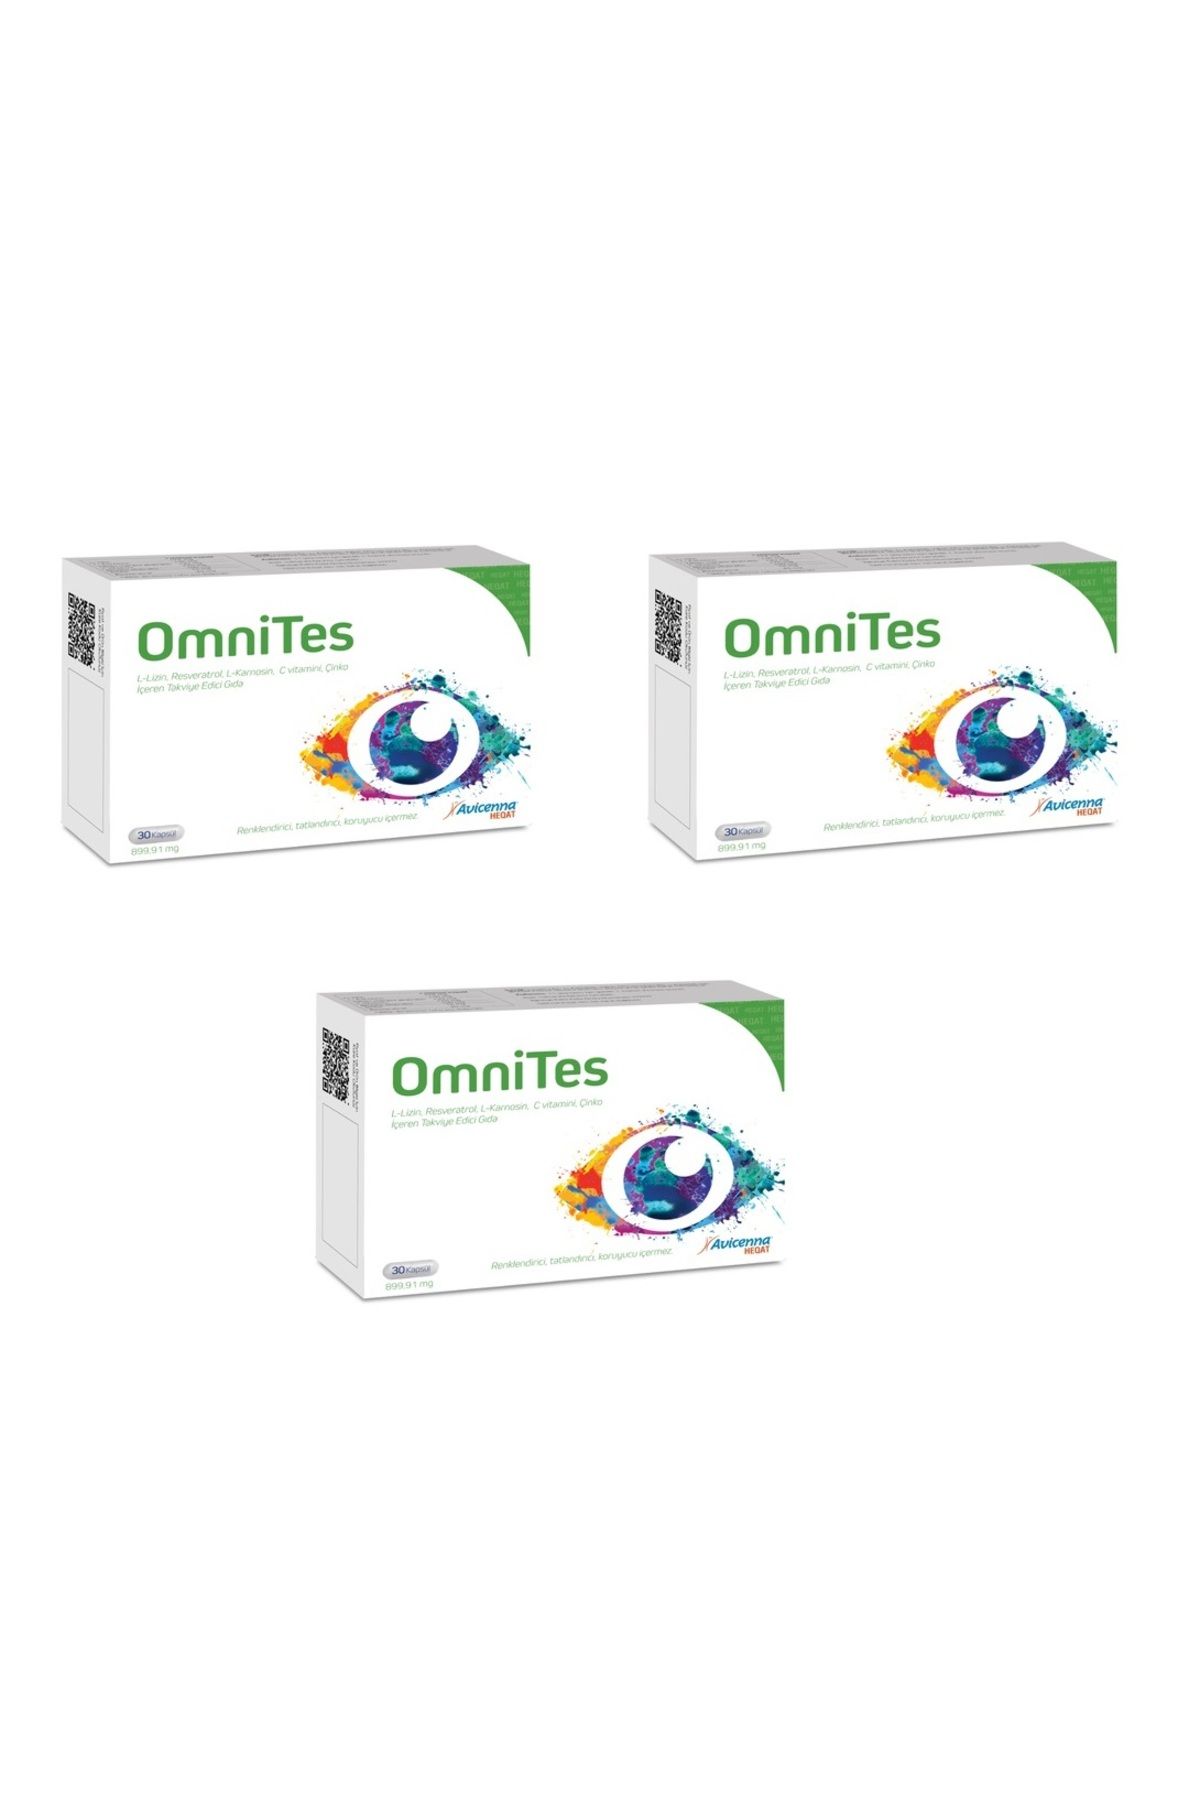 Avicenna Omnites Omega 3 Ve D3 Vitamini Içeren Takviye Edici Gıda - 60 Softgel Yumuşak Kapsül 3 Adet